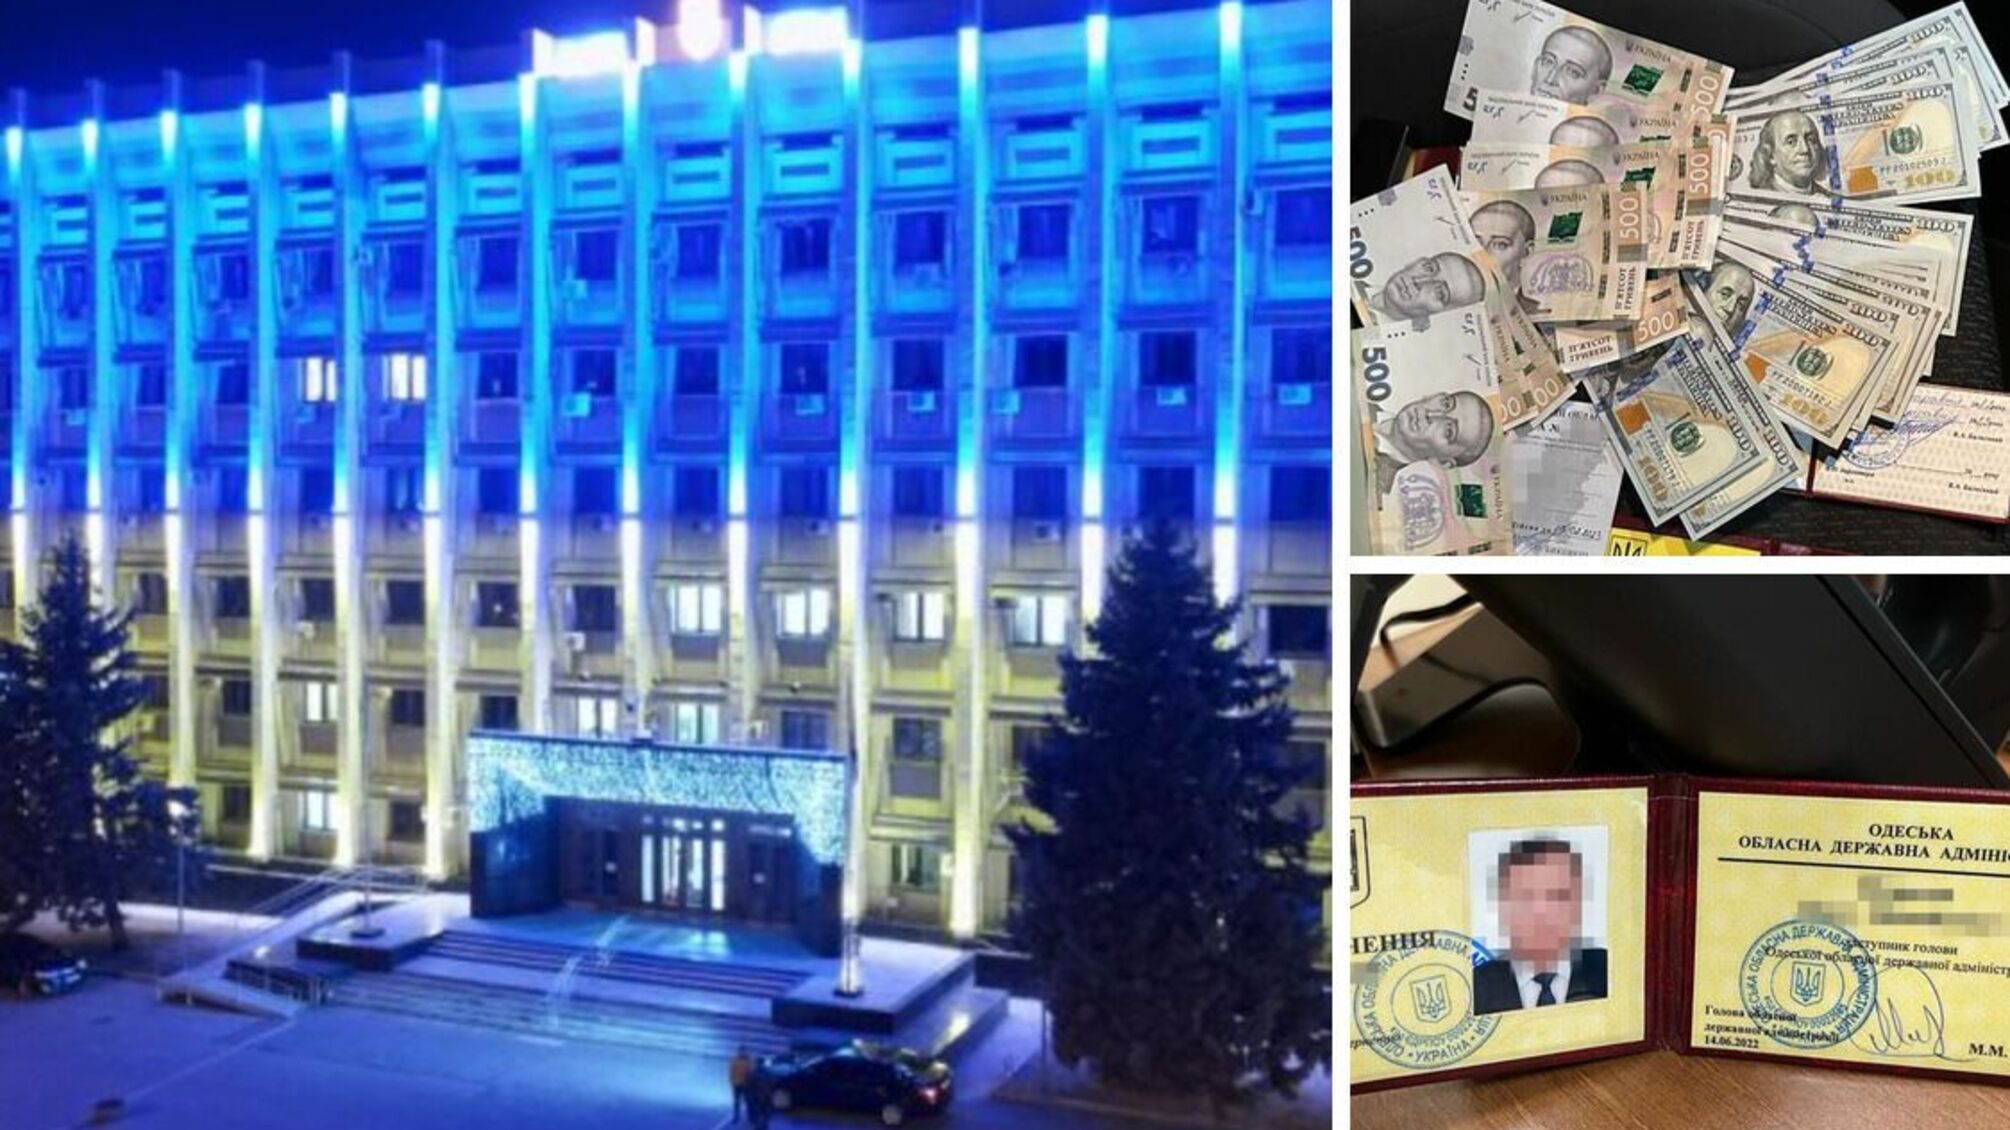 СБУ задержала топ-чиновника из Одессы: пытался 'отмазать' подчиненного-коррупционера (фото)